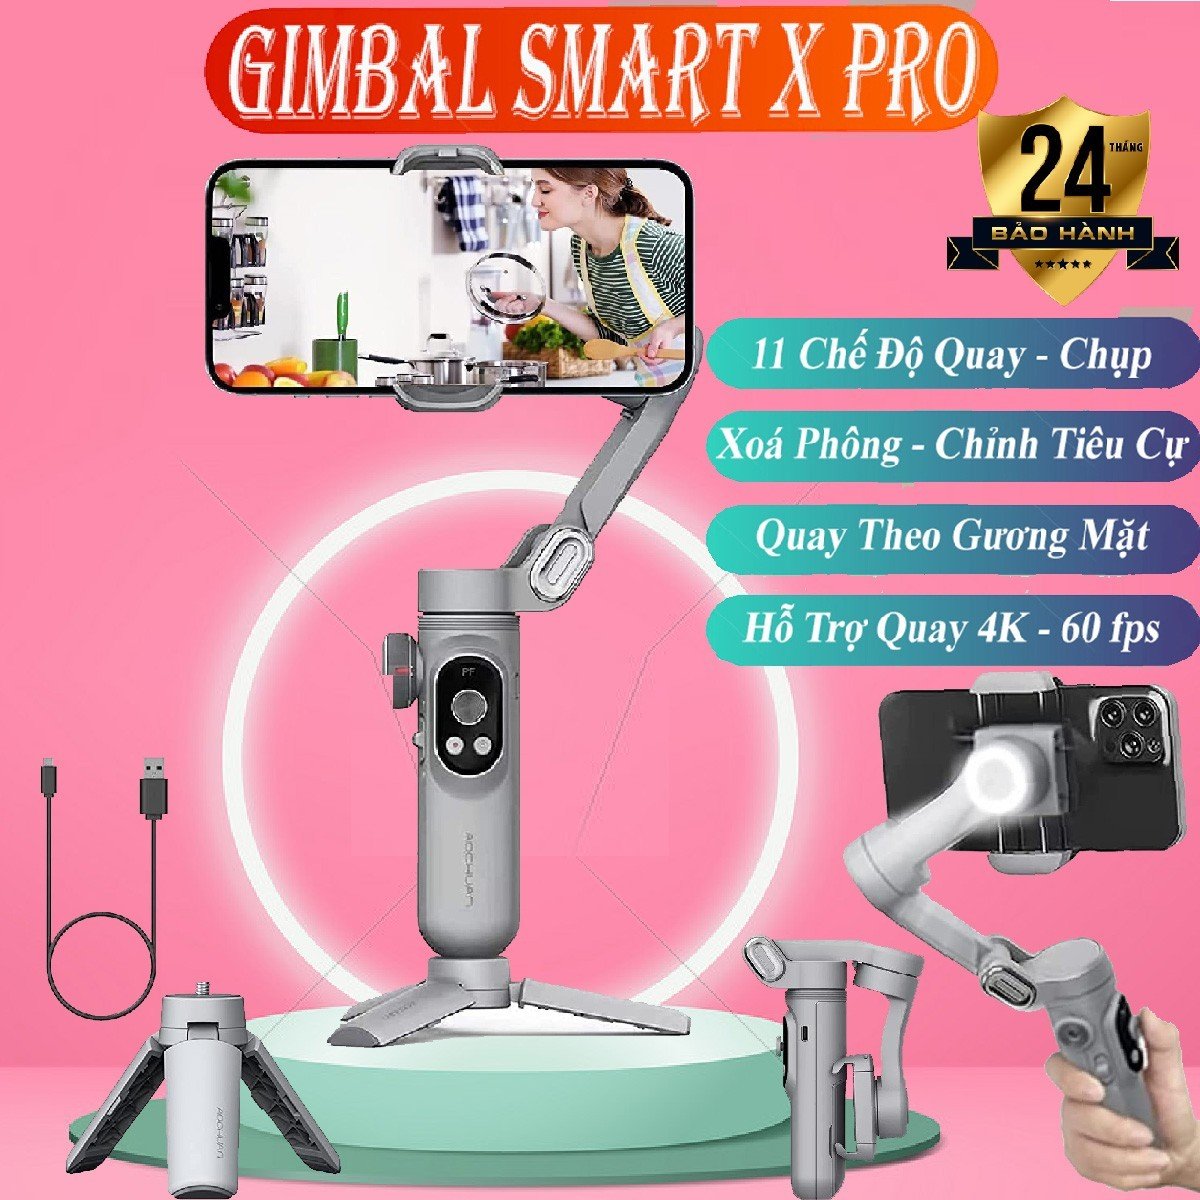 Gimbal cho điện thoại chính hãng Smart X Pro, Tay cầm gimbal chống rung hỗ trợ quay phim chụp ảnh chuyên nghiệp cho điện thoại, chuyển cảnh mượt mà